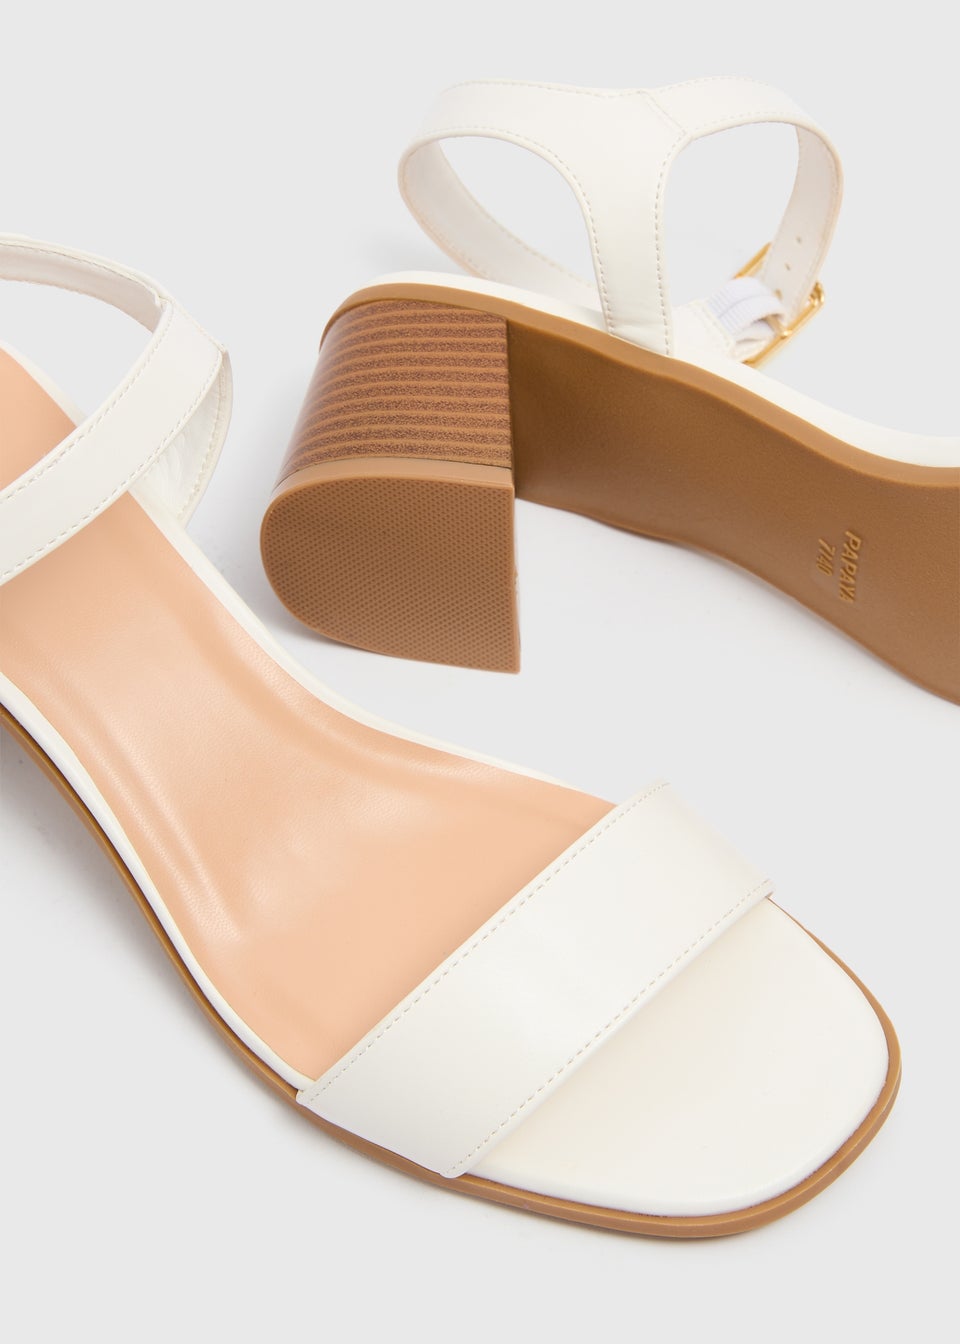 ASOS HOLLYWOOD Embellished Platform Sandals | ASOS